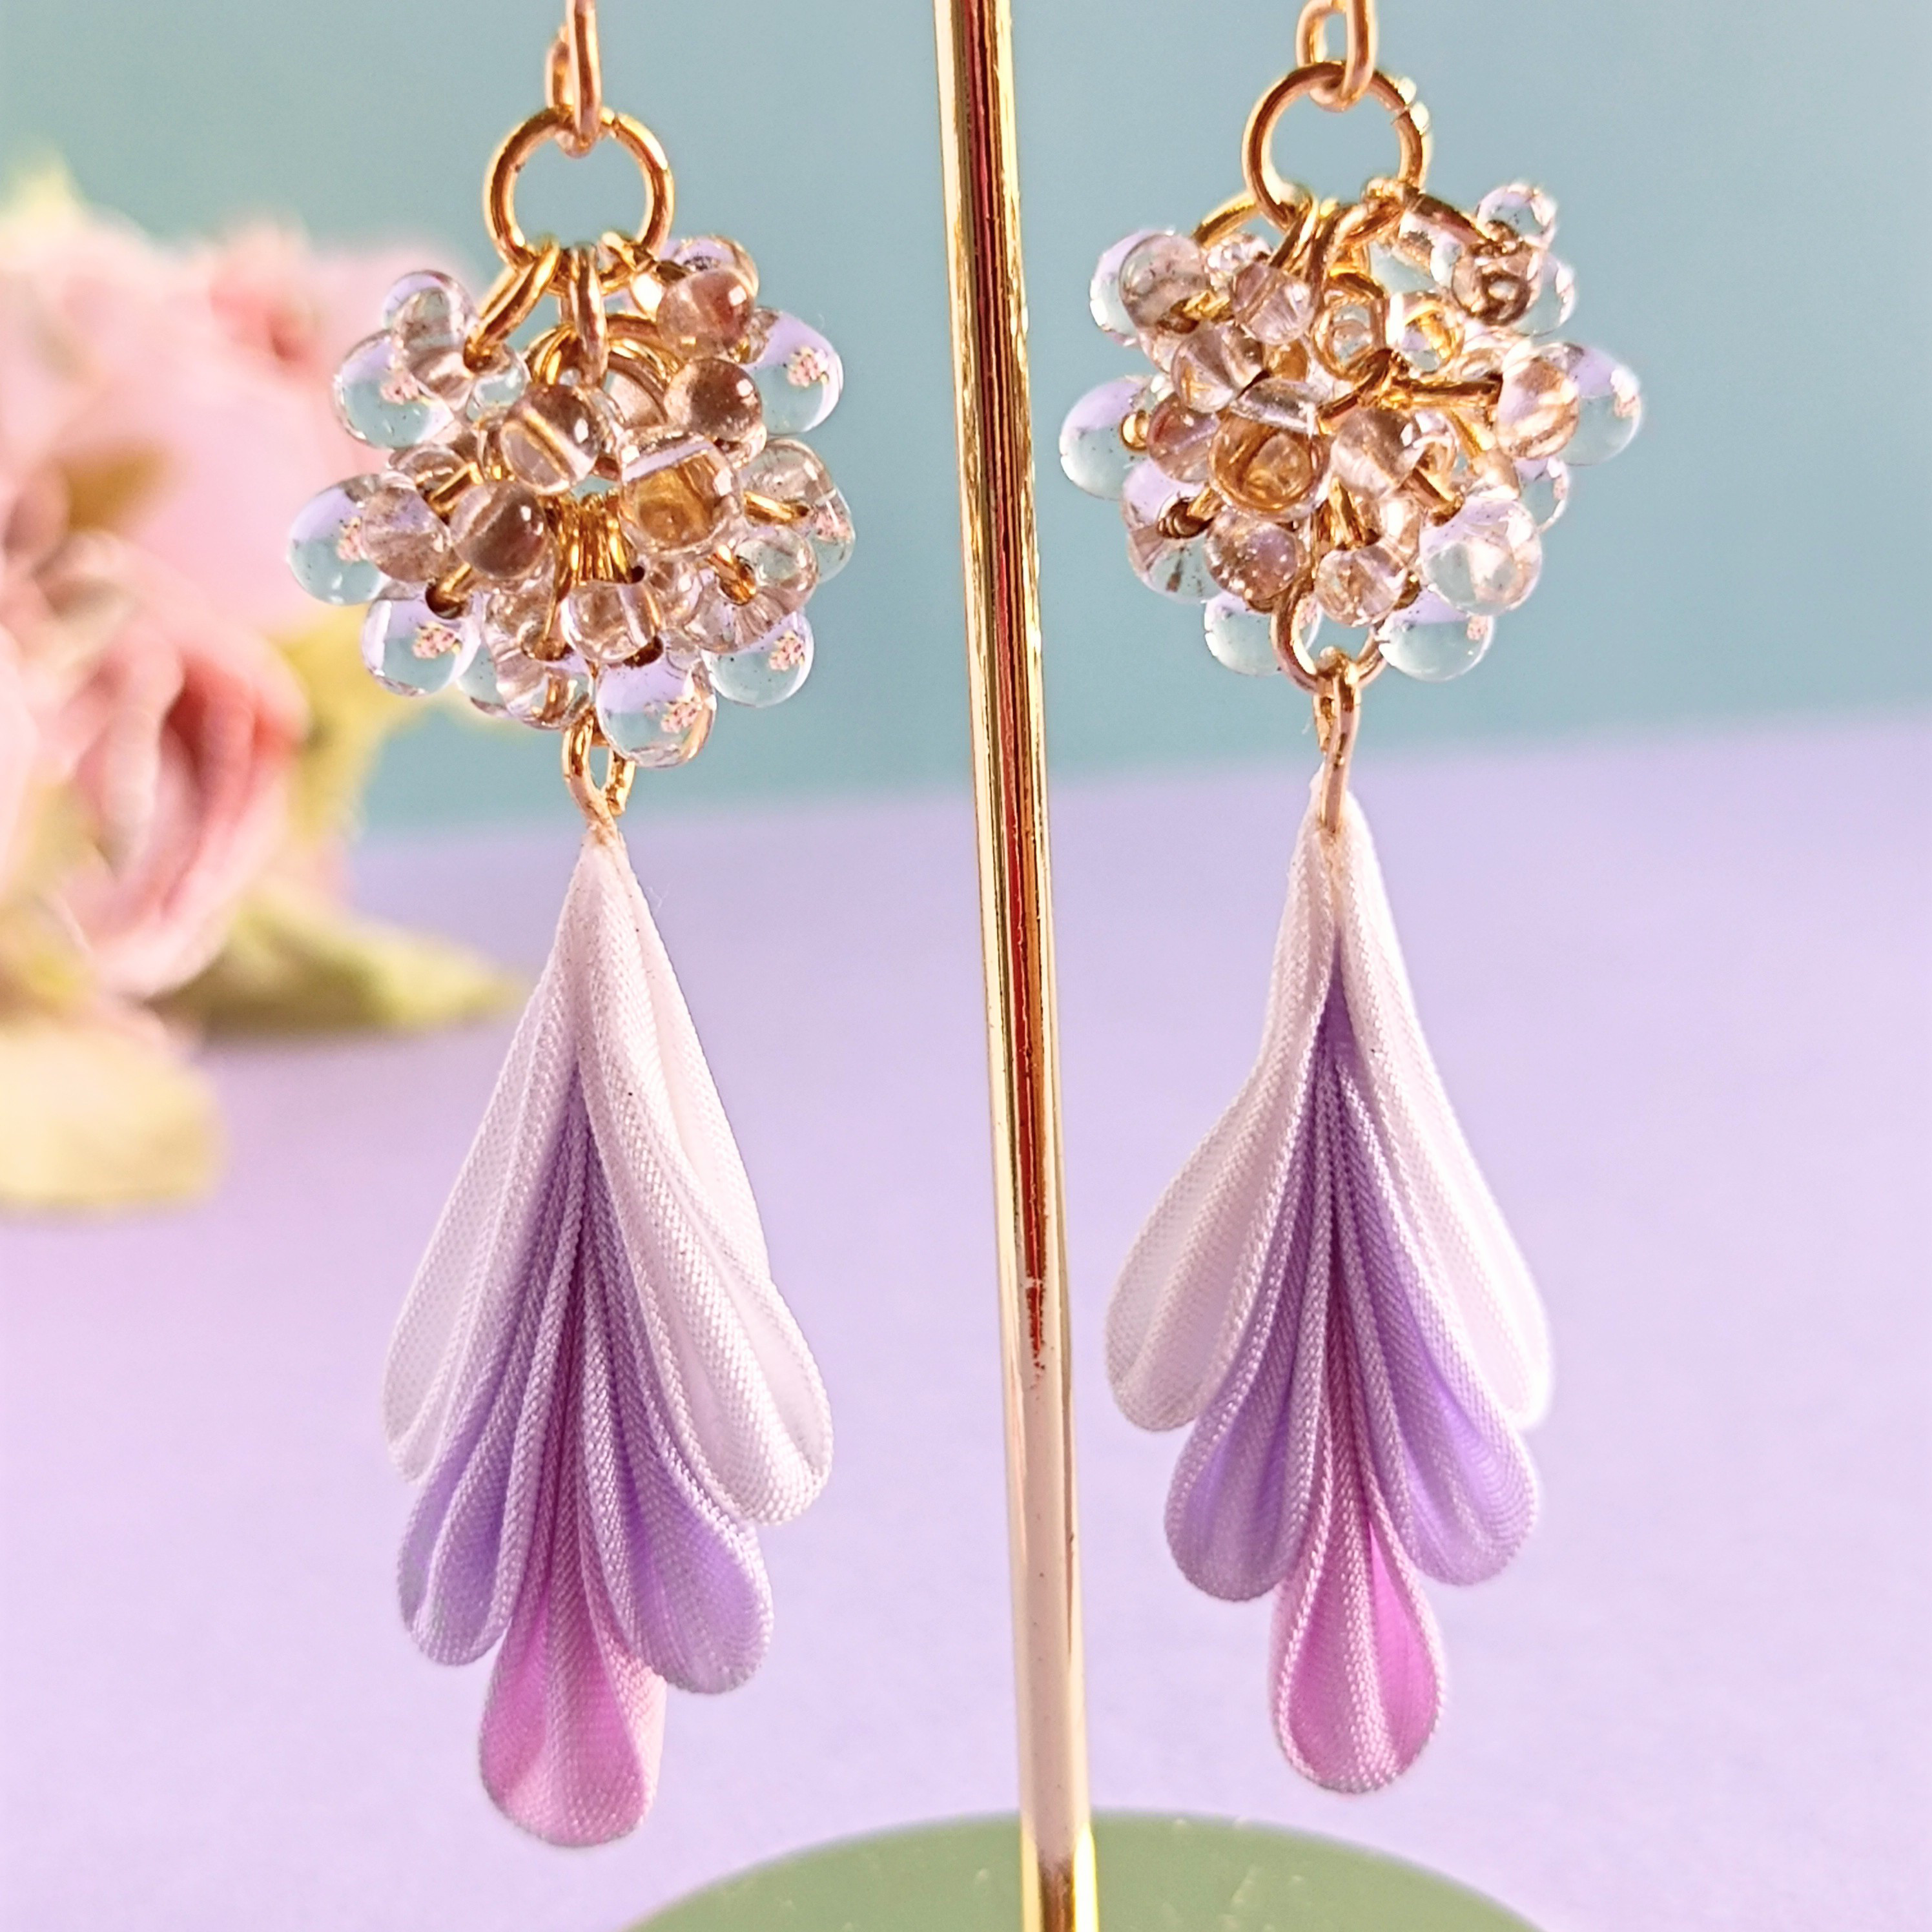 独創的 ハンドメイド 紫陽花とチェコガラスのイヤリング ピンクパープル あじさい 浴衣